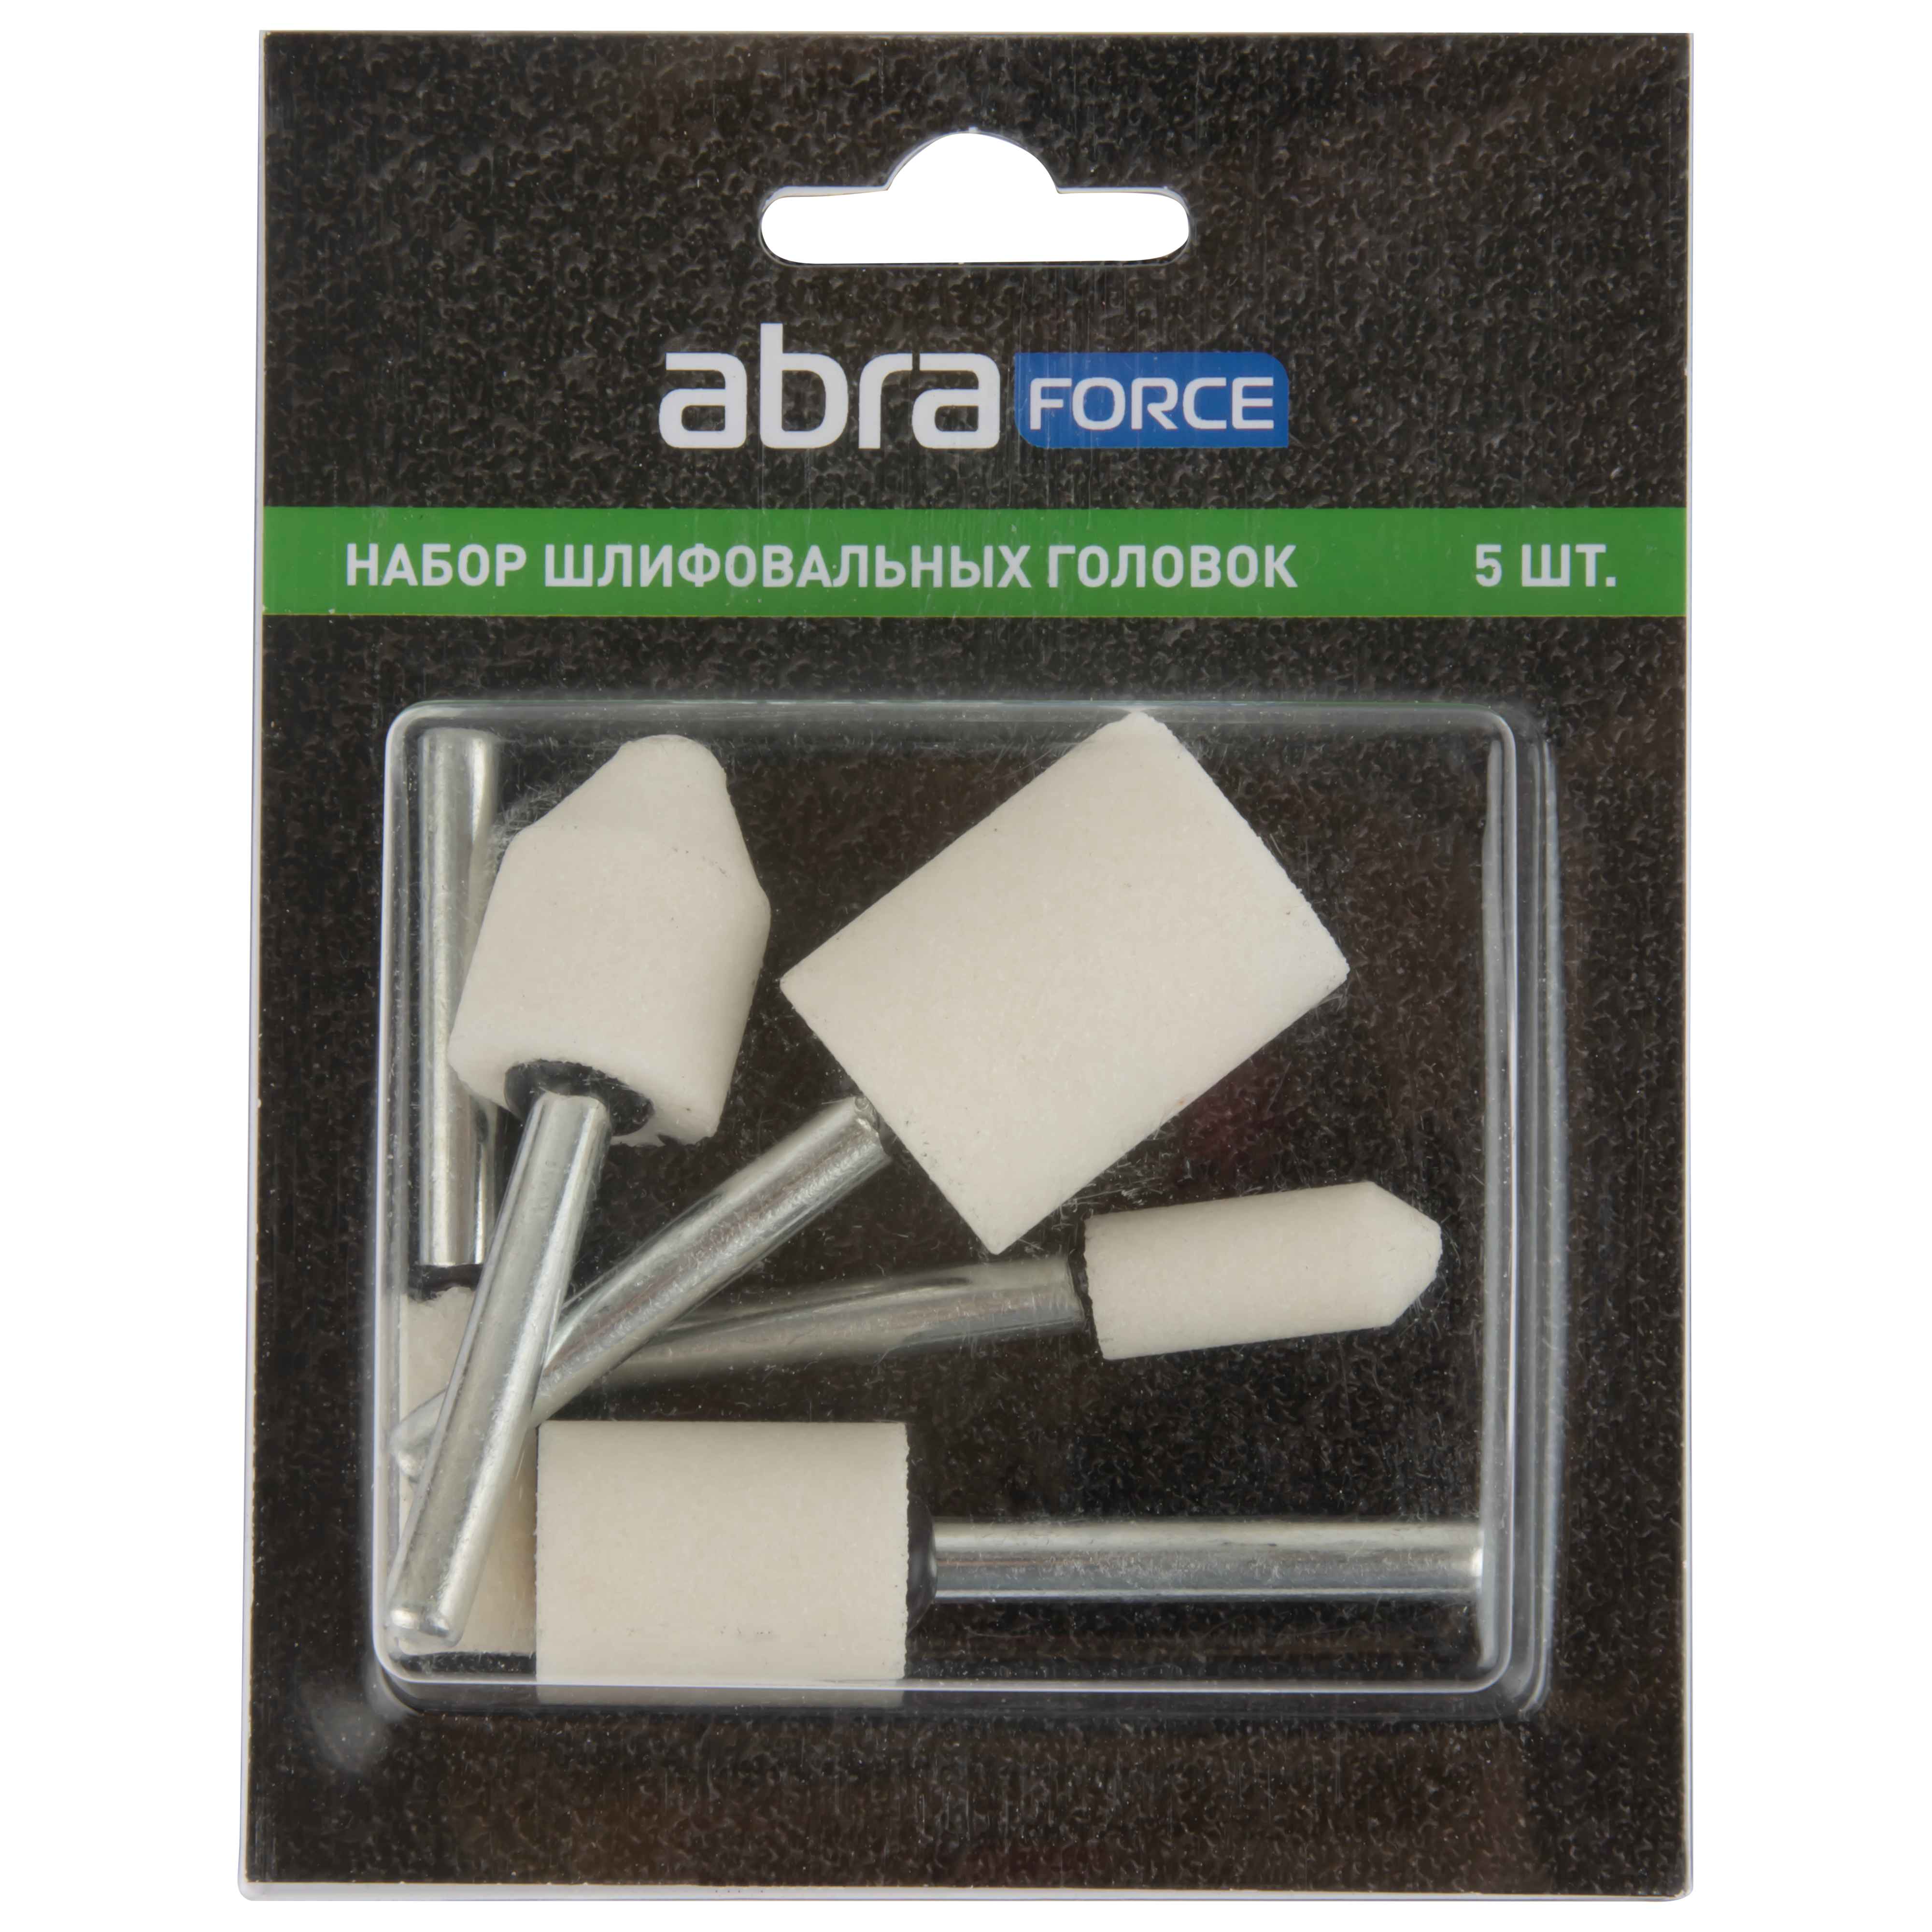 Набор шлифовальных головок ABRAforce, белый электрокорунд P60, 5 штук.